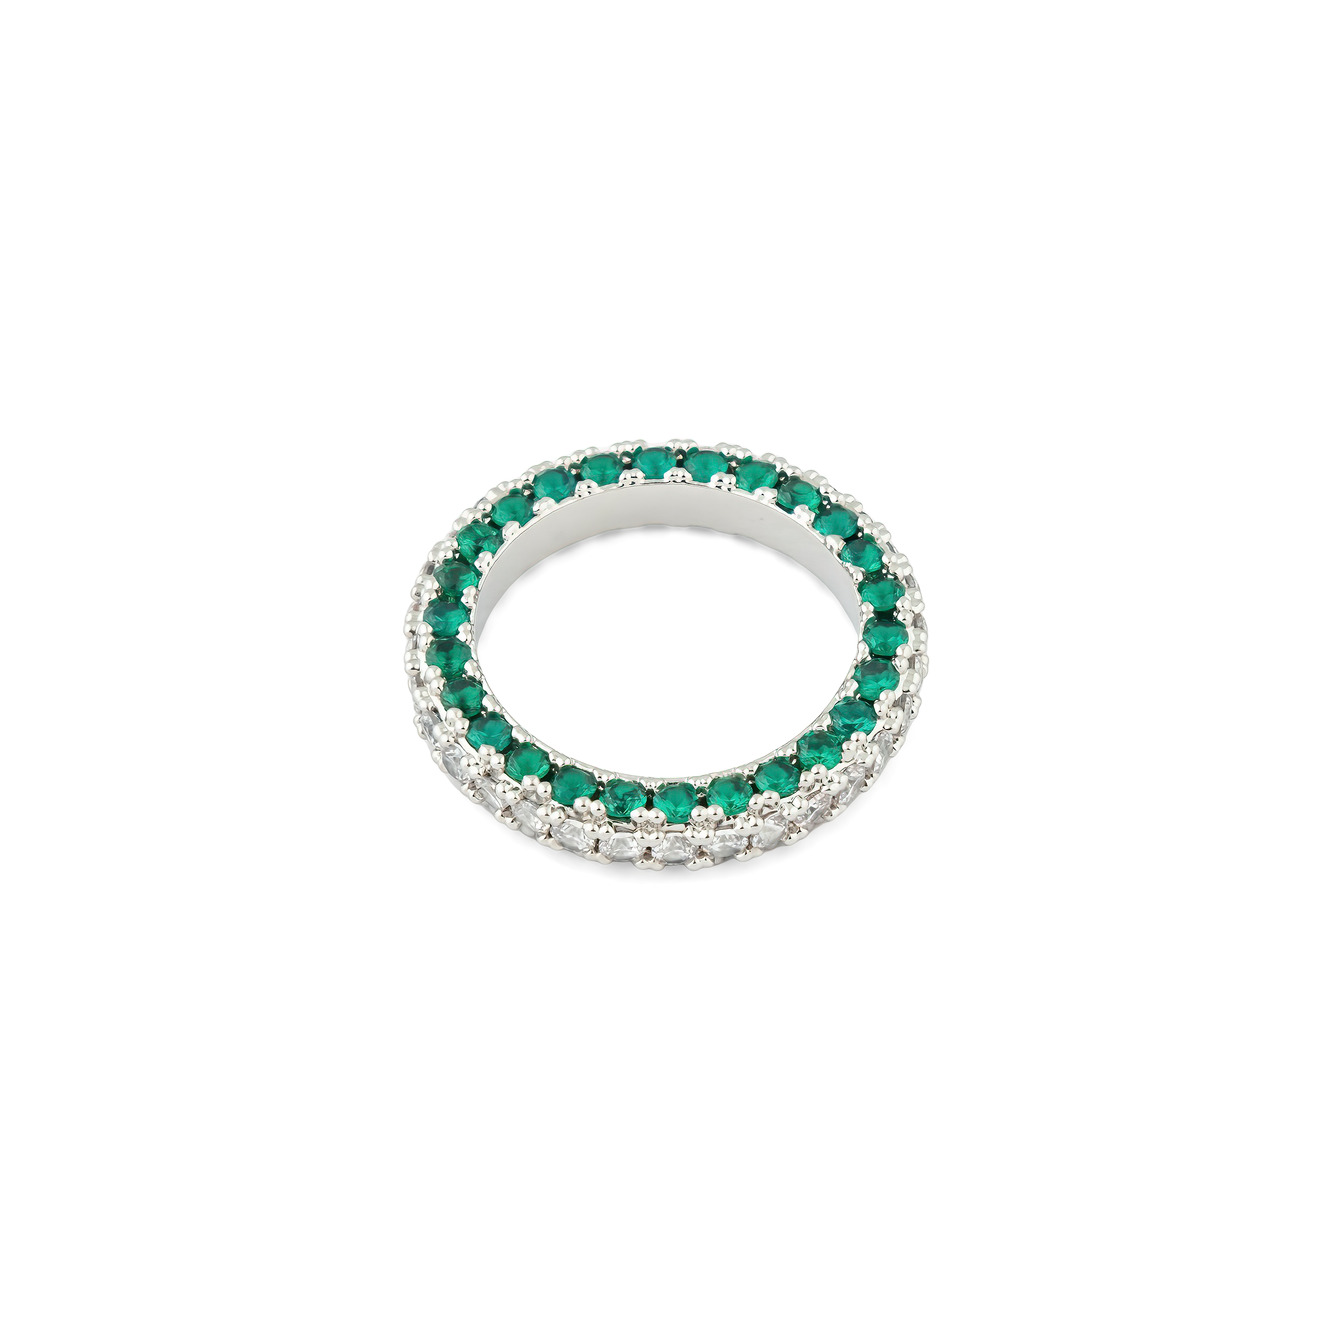 Herald Percy Серебристое кольцо с белыми и зелеными кристаллами herald percy серебристое колье с белыми кристаллами